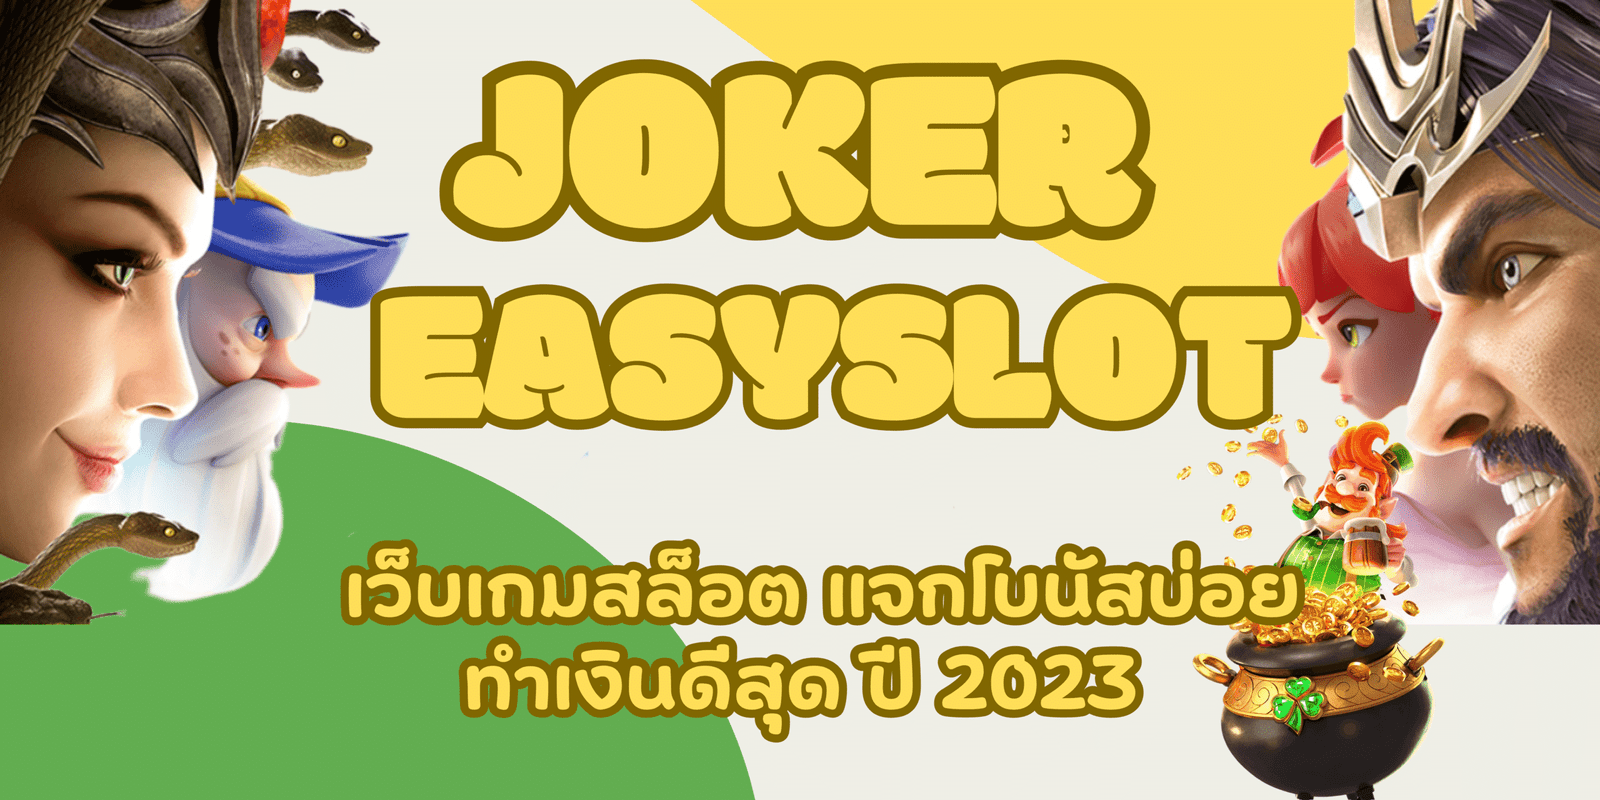 joker-easyslot- ทำเงินดีสุด